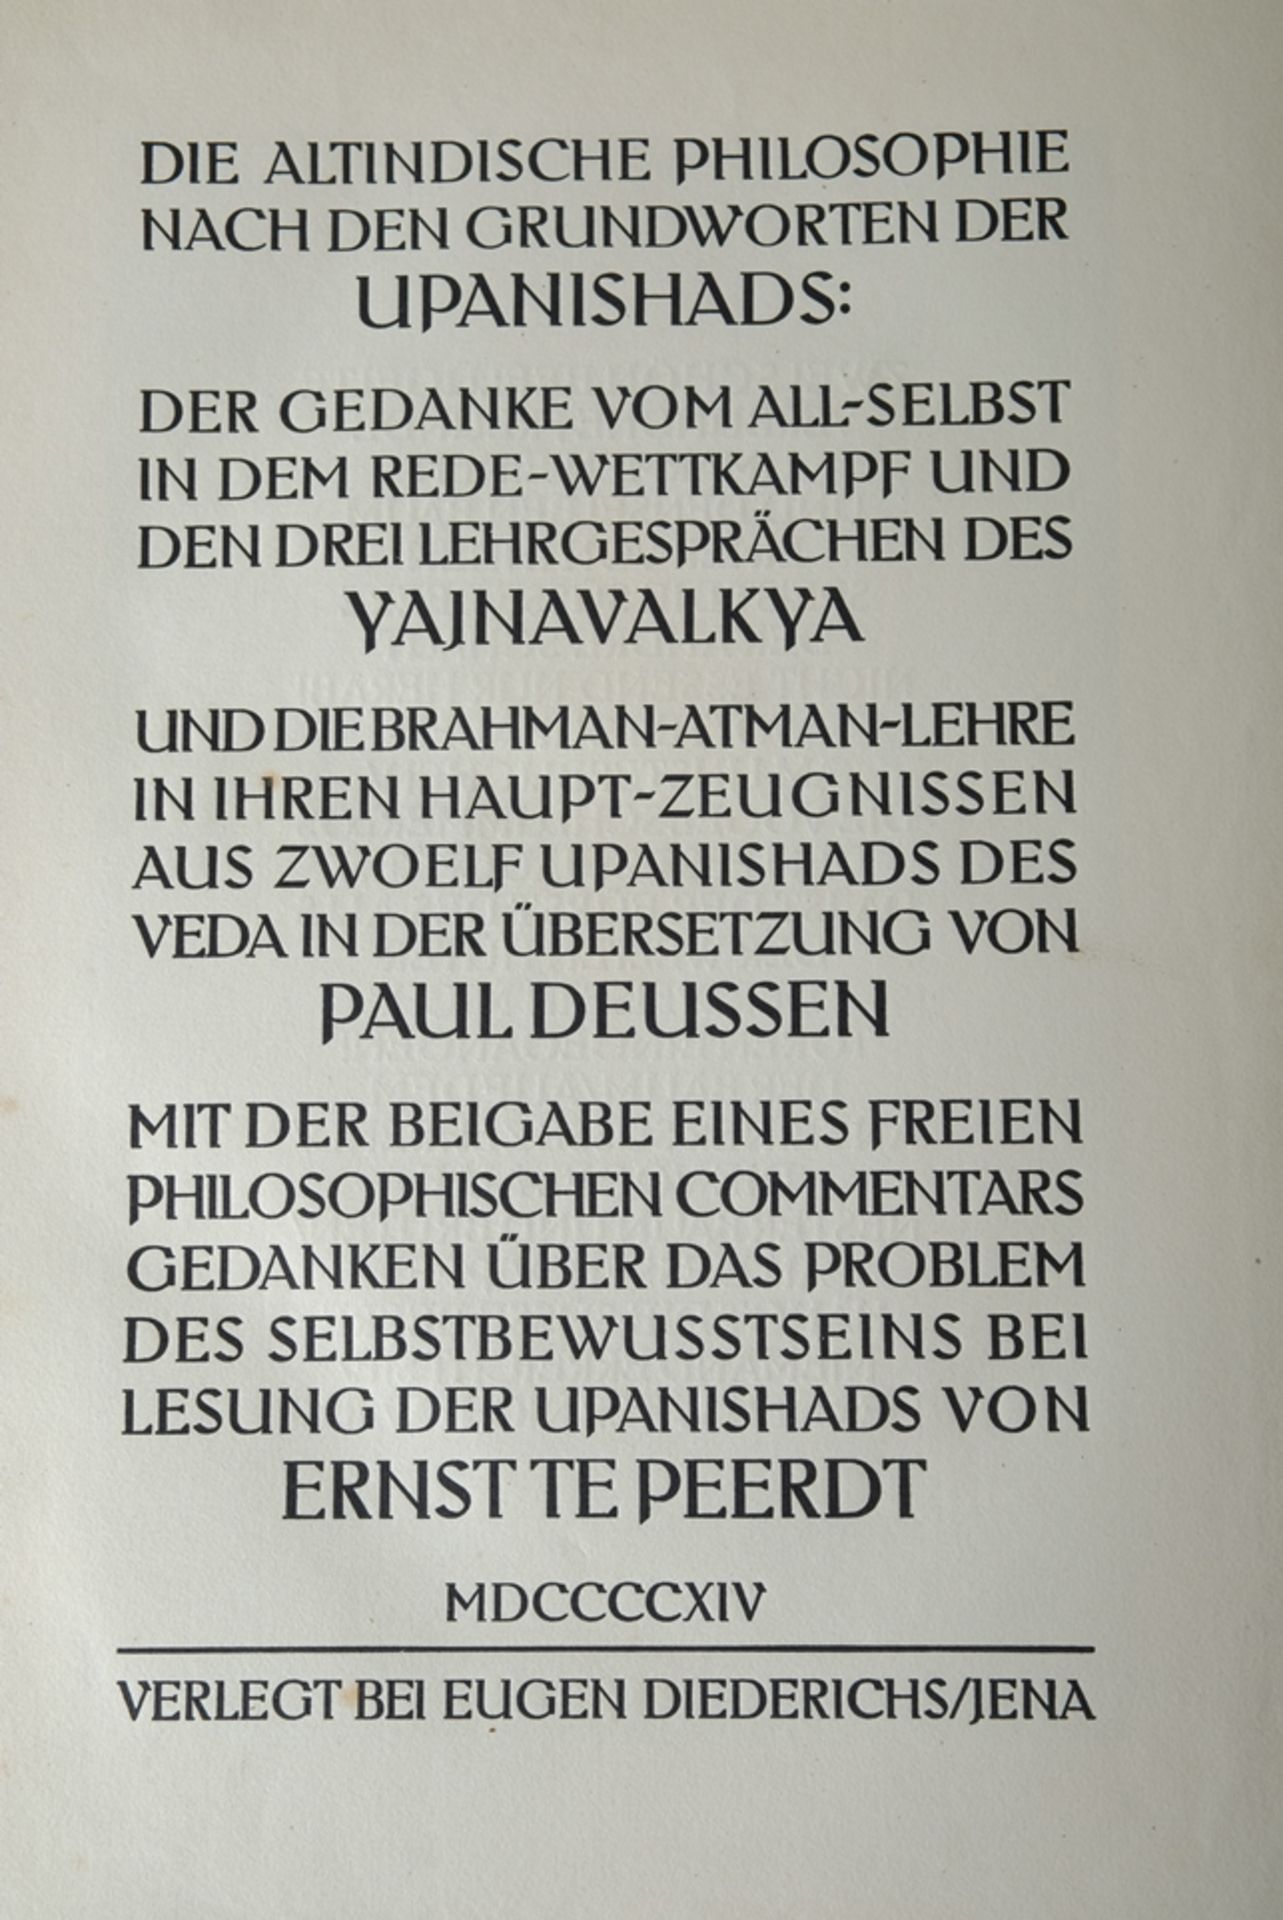 Diederichs, Eugen (ed.) "Die Grundworte des Indischen Monismus", from the Upanishads of the Veda, 1 - Image 3 of 7